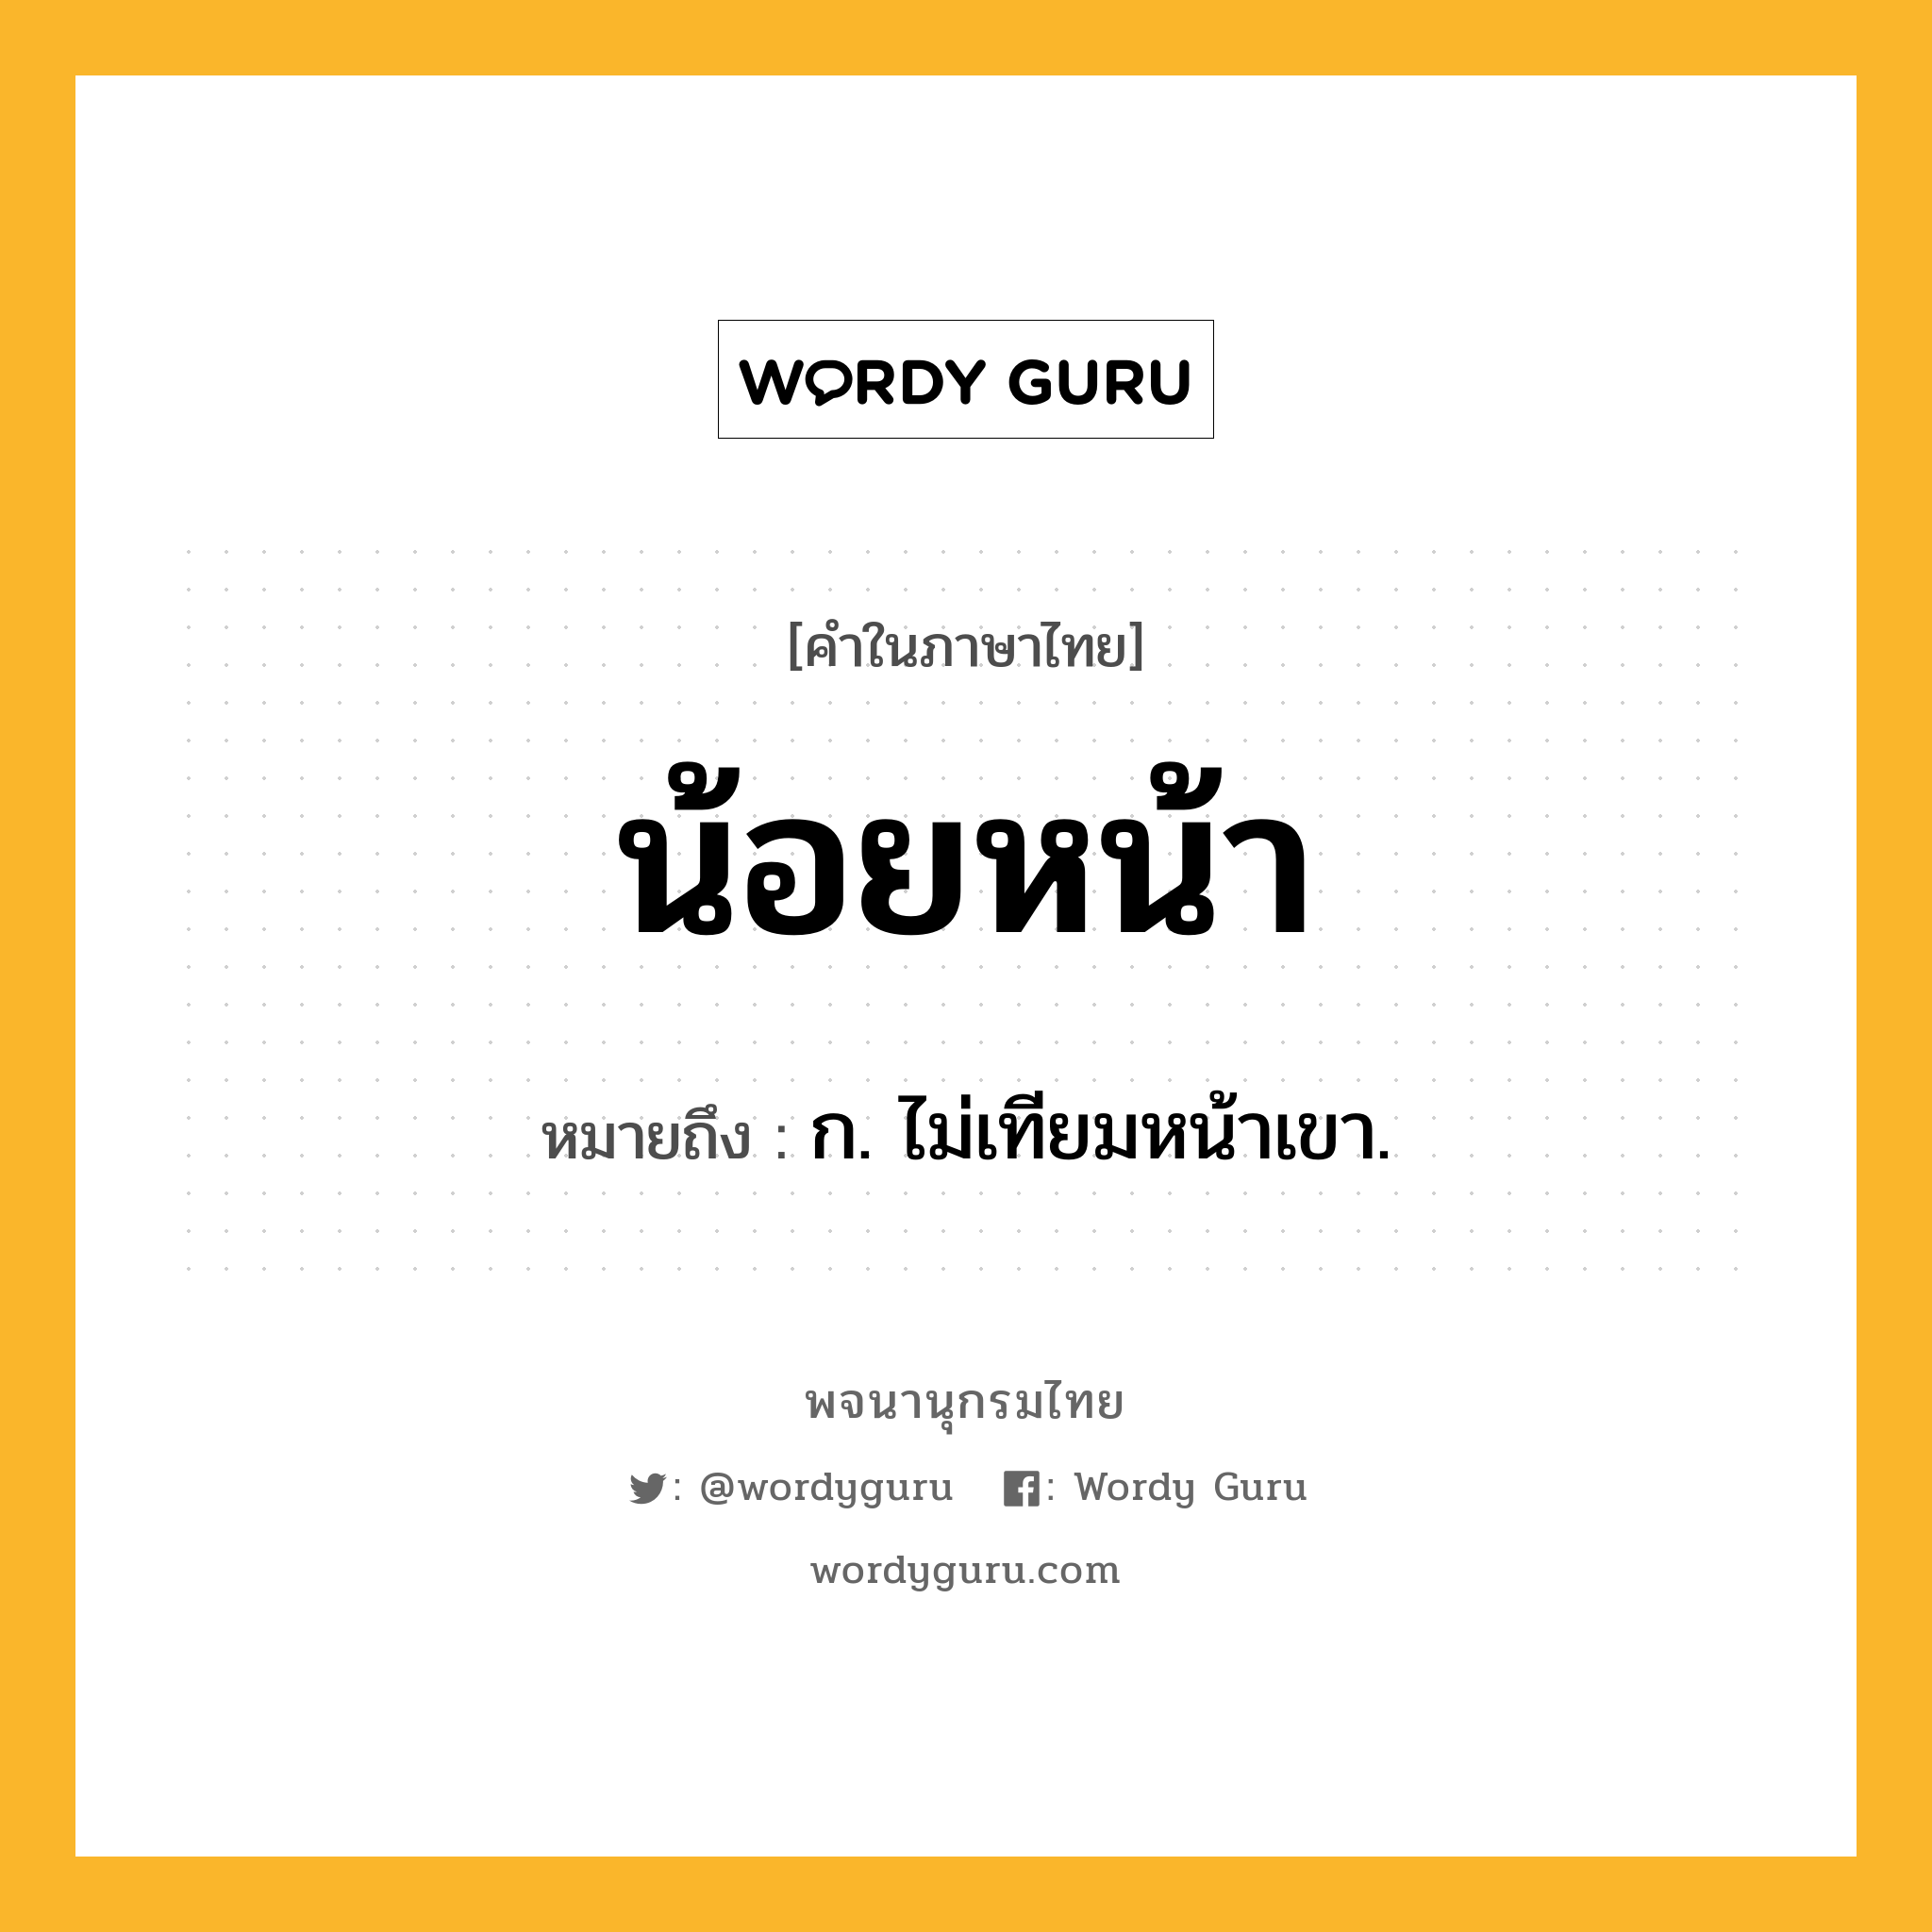 น้อยหน้า หมายถึงอะไร?, คำในภาษาไทย น้อยหน้า หมายถึง ก. ไม่เทียมหน้าเขา.